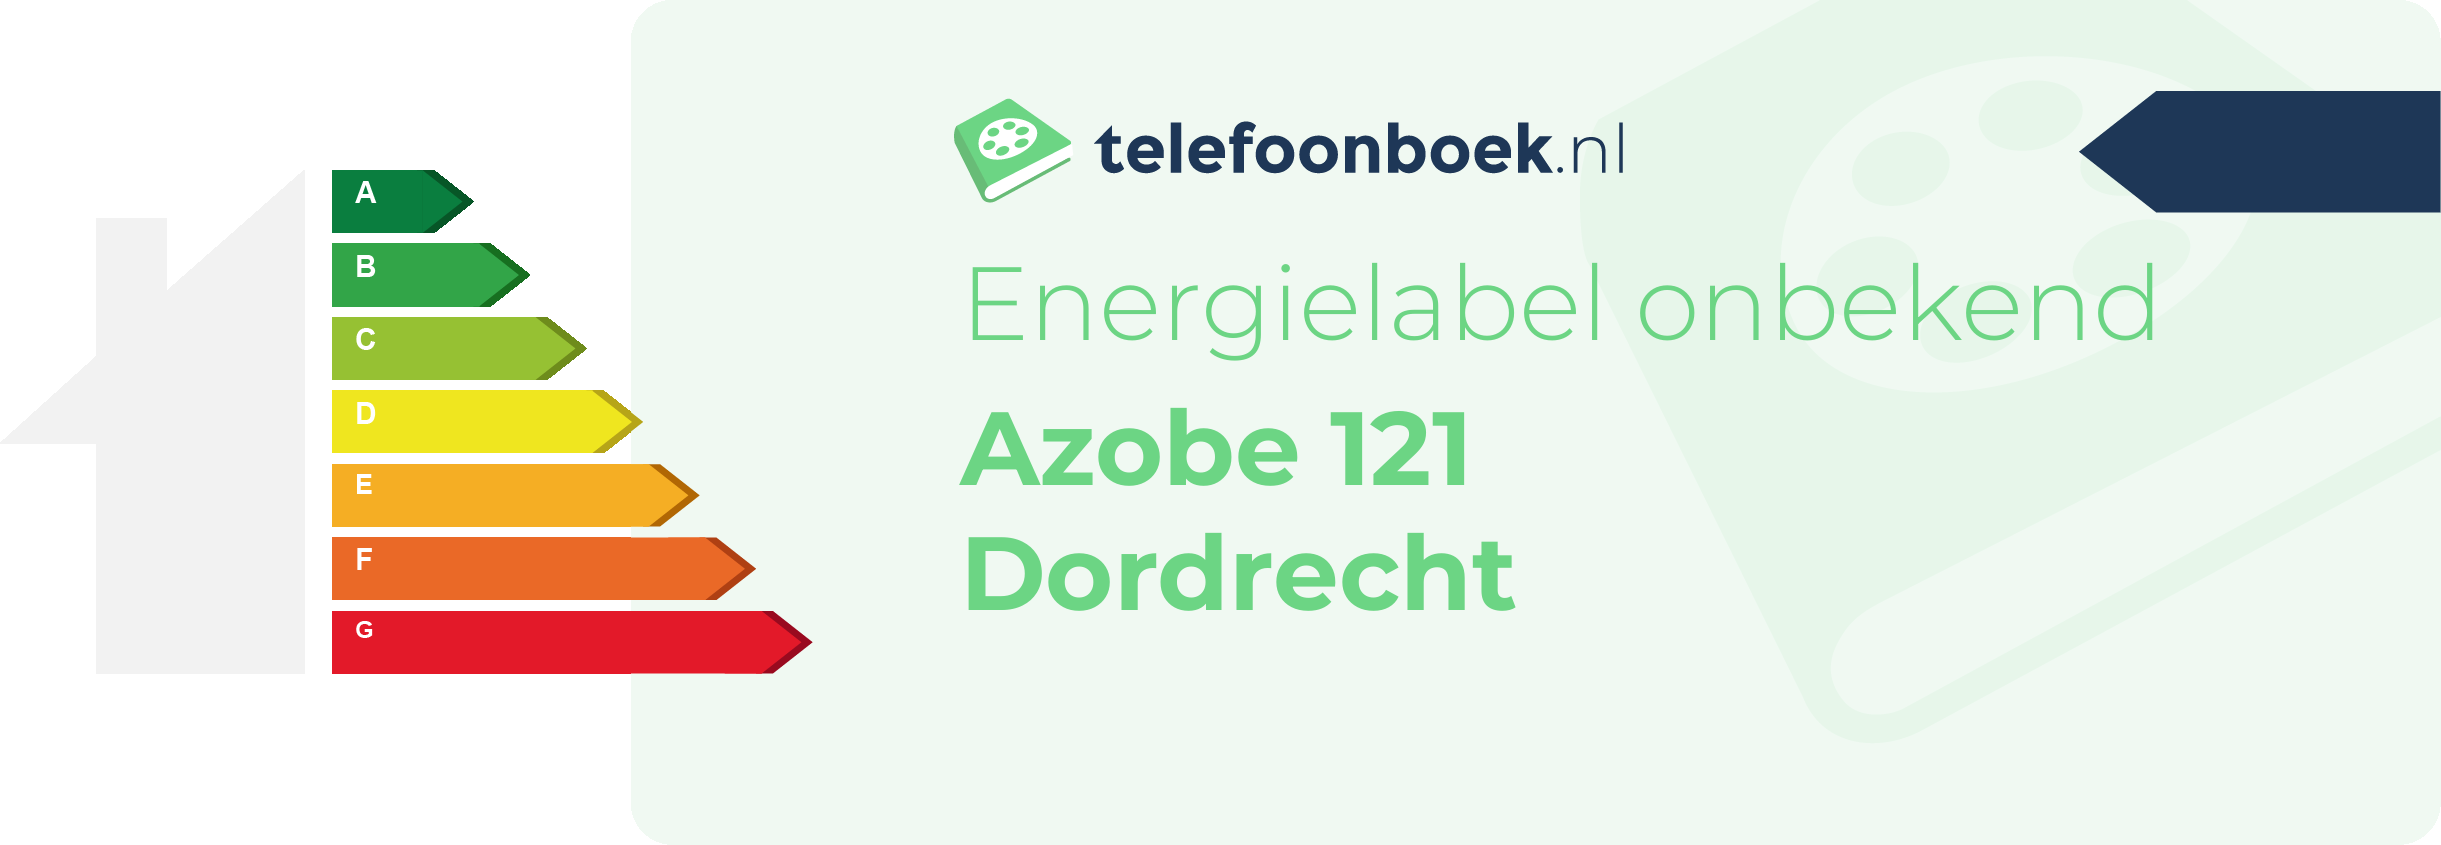 Energielabel Azobe 121 Dordrecht